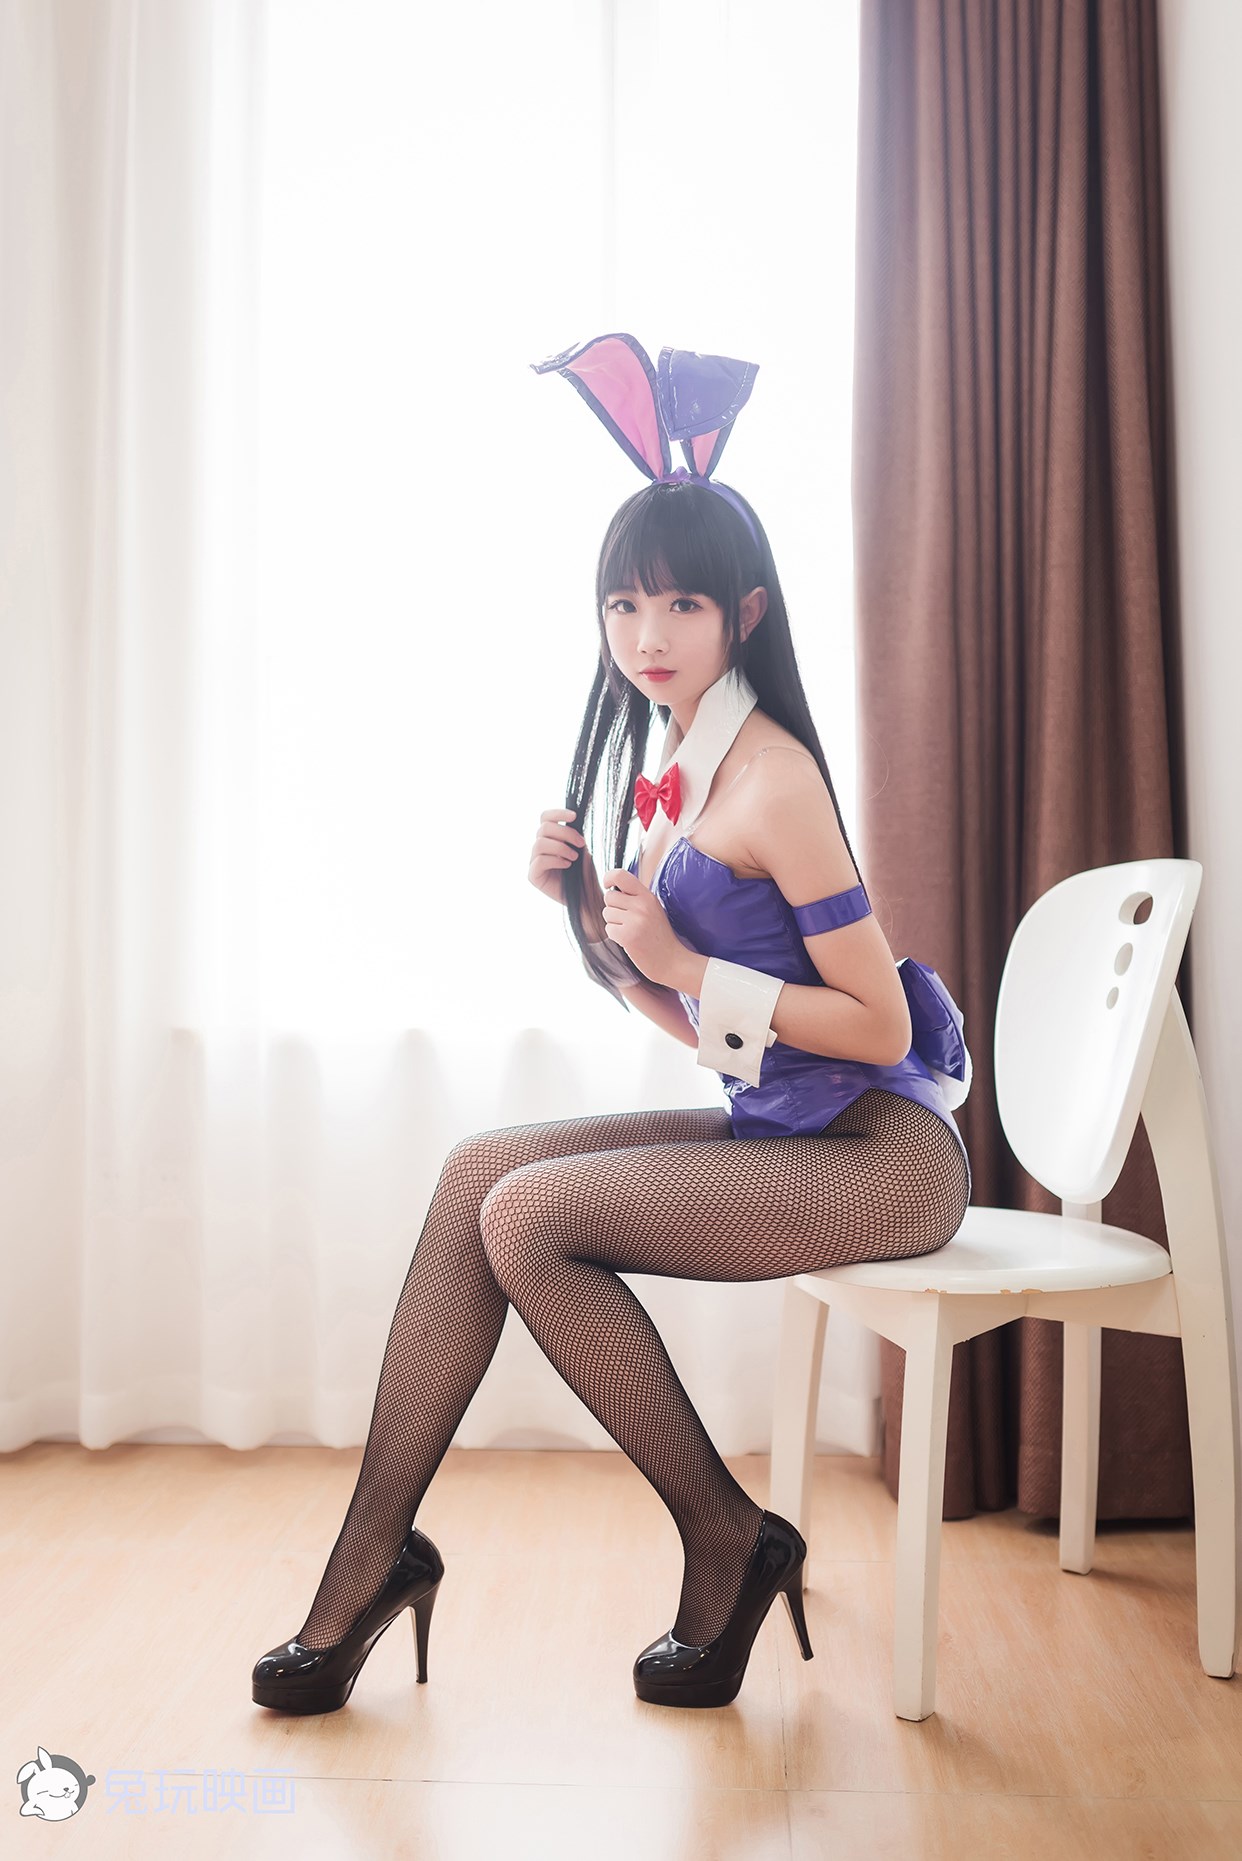 【兔玩映画】兔女郎vol.o7 - 雪琪 兔玩映画 第6张